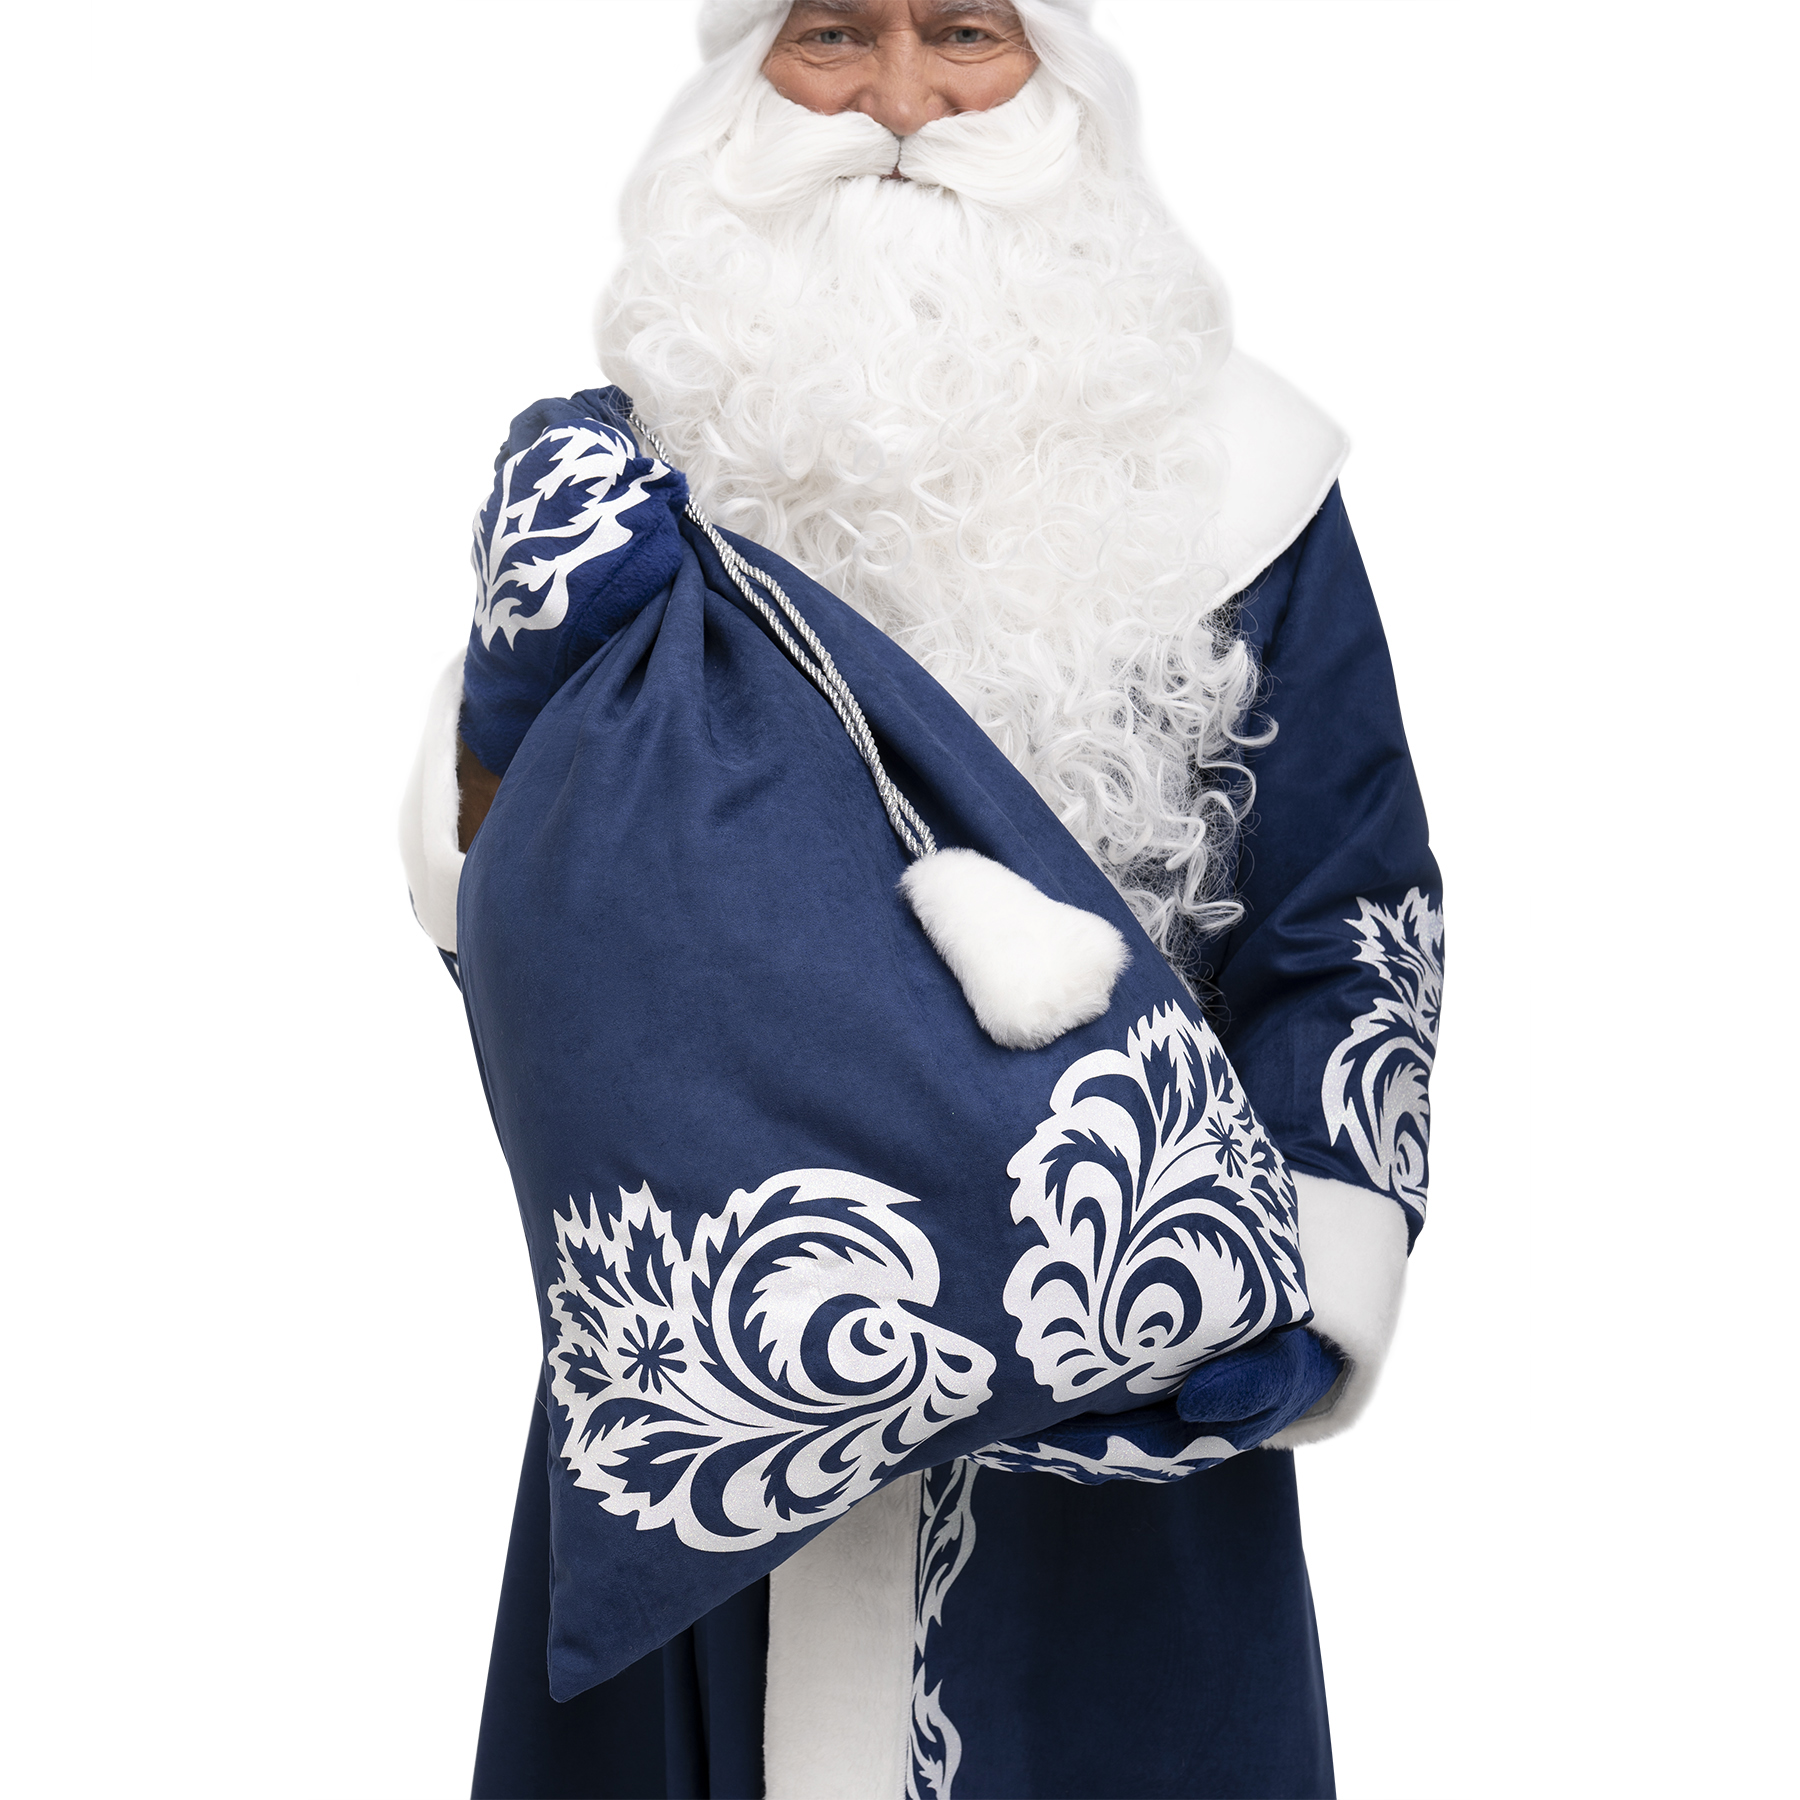 Santa Claus Costume Winter